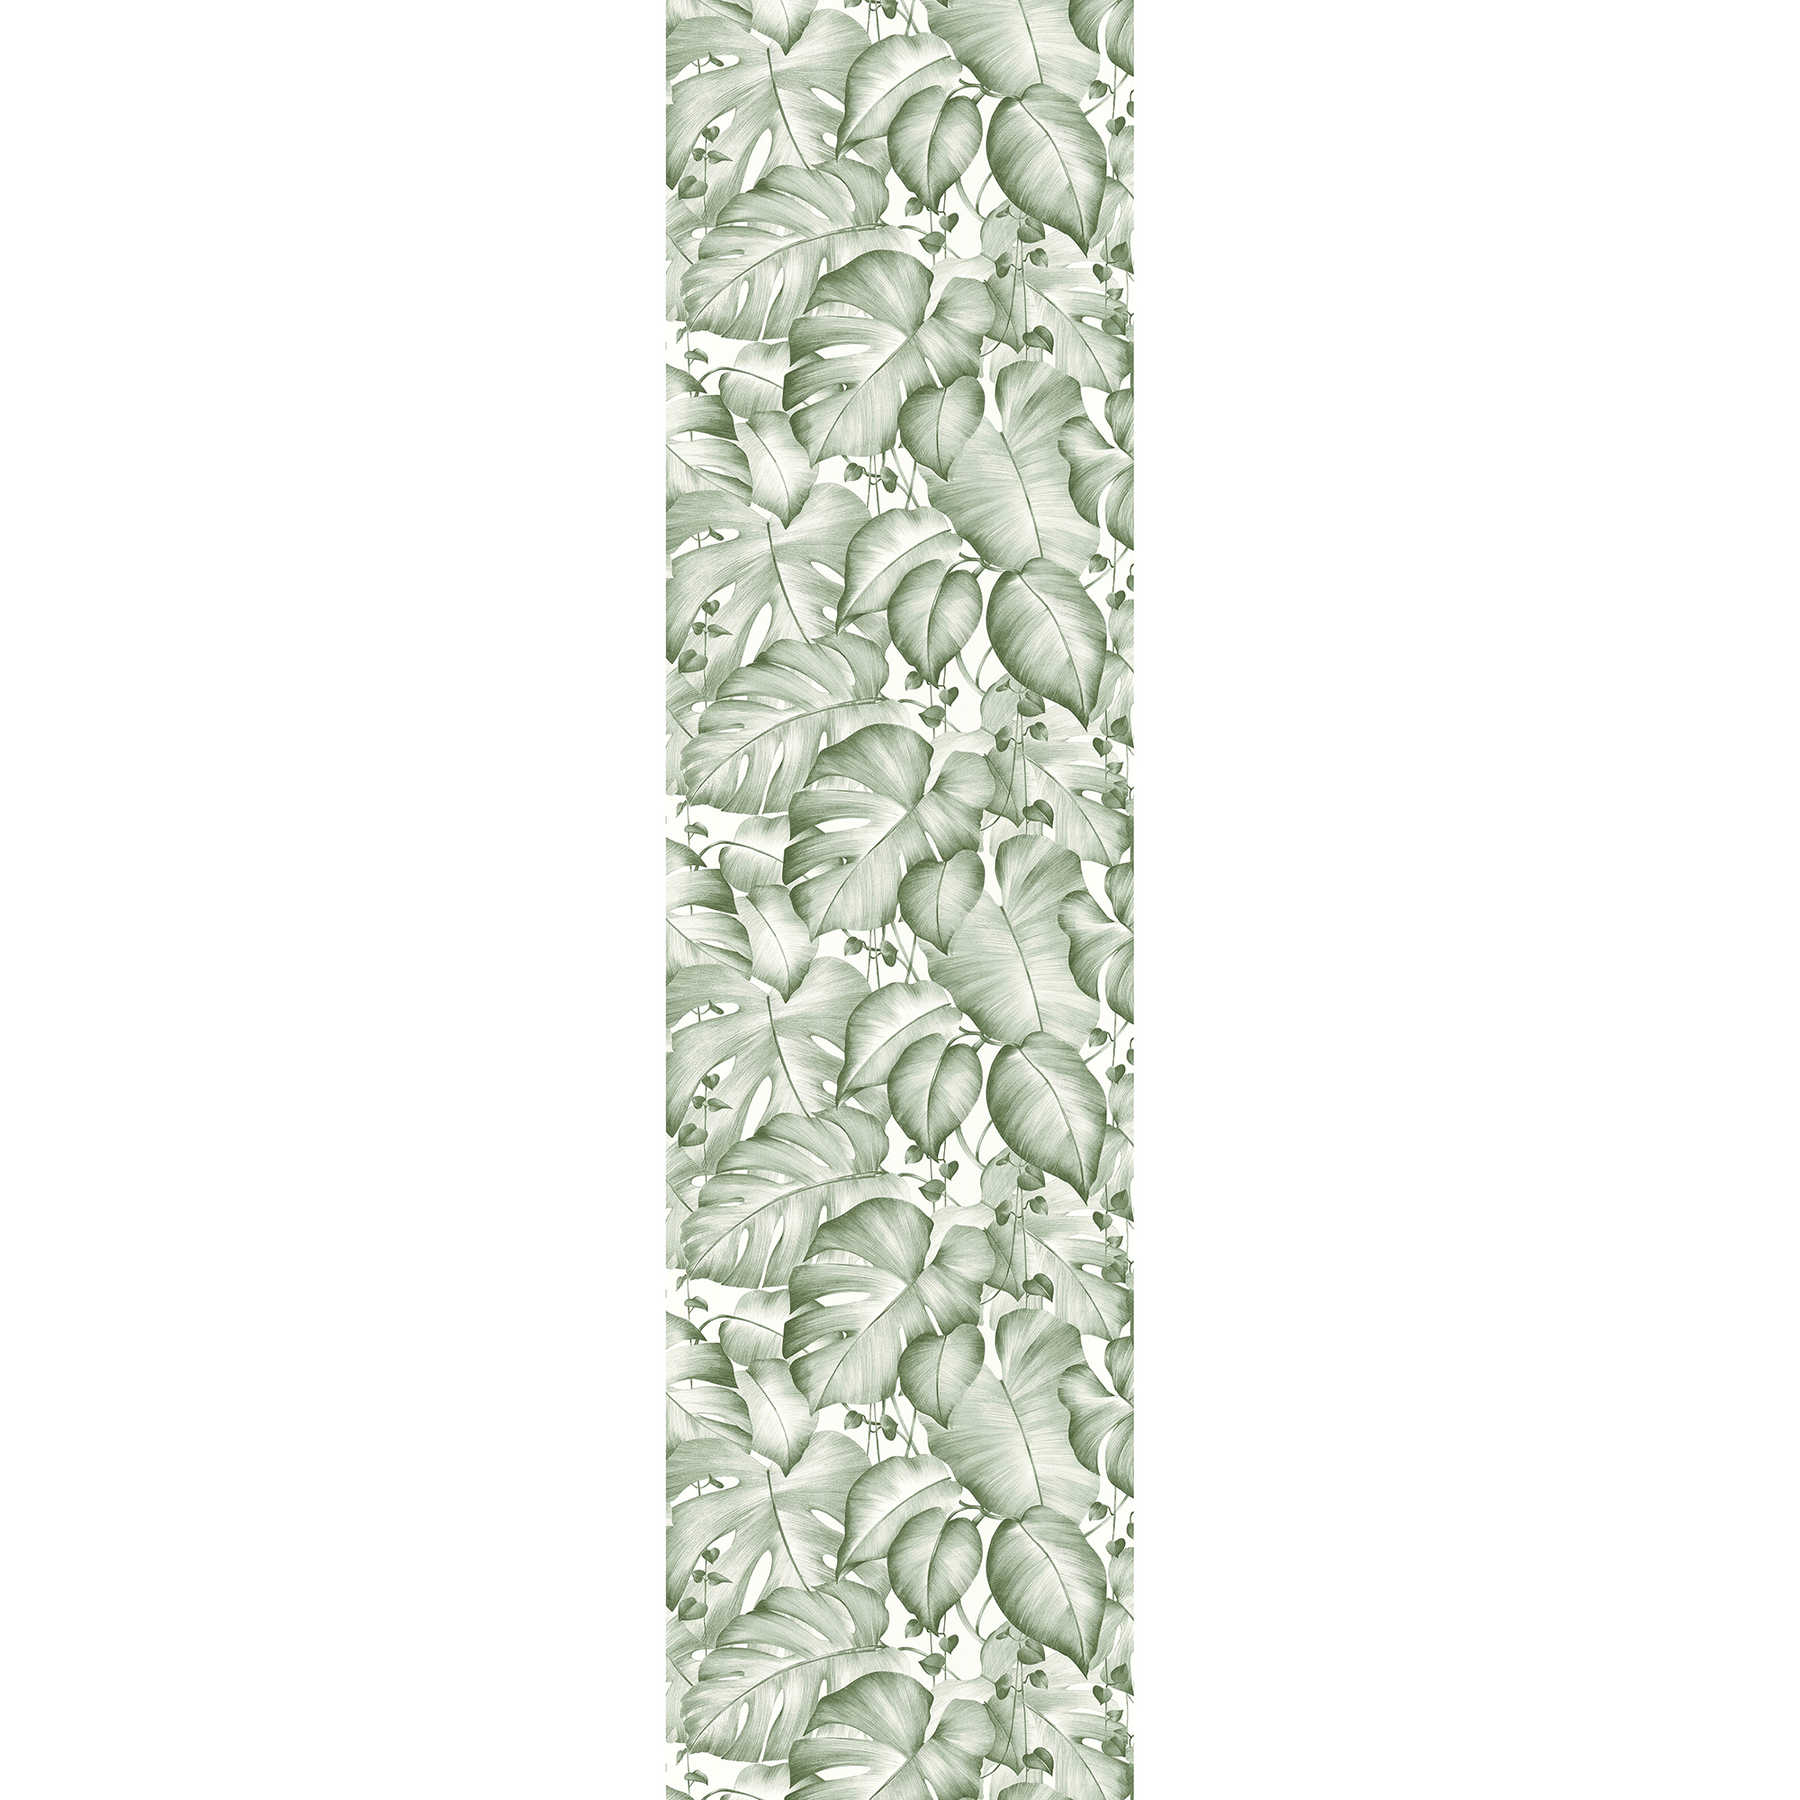         Designpanel selbstklebend mit Monstera Blättern – Grün, Weiß
    